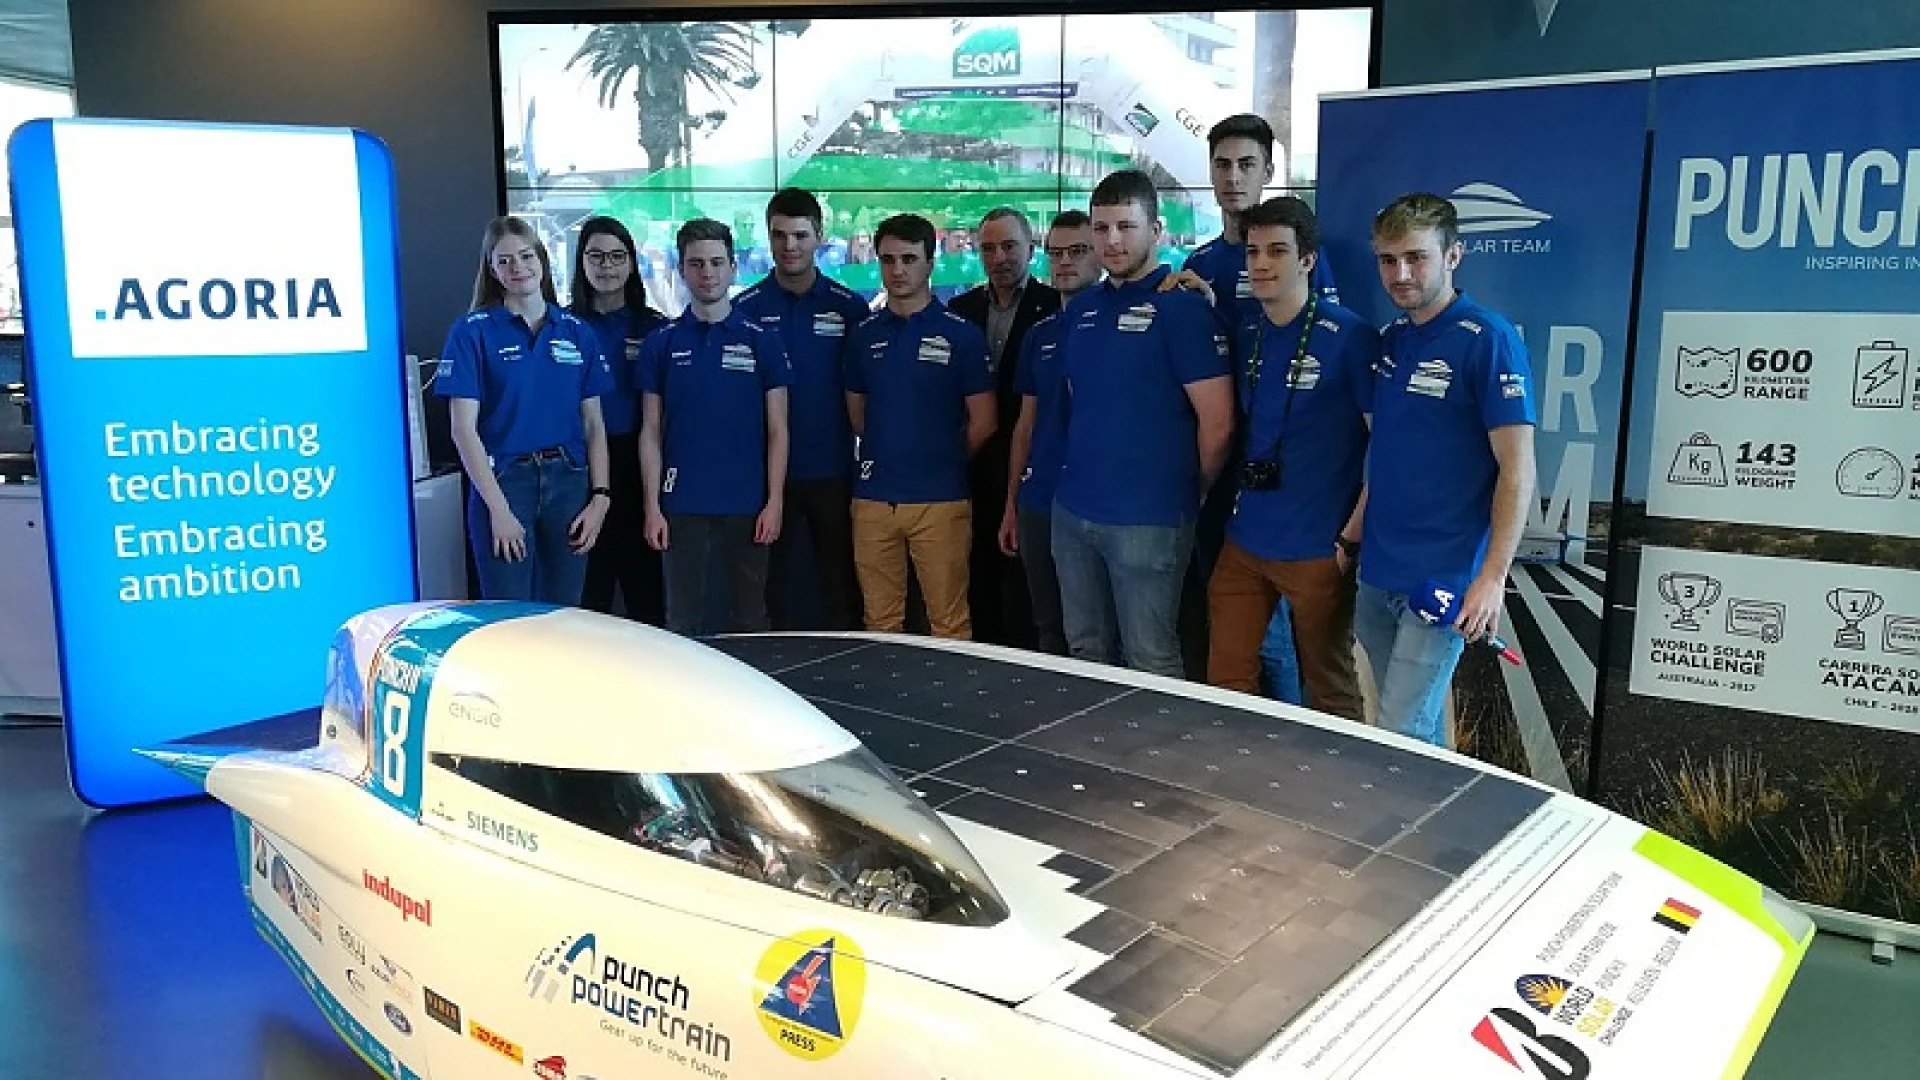 Nieuwe Solarteam KU Leuven wil snelste worden op WK voor zonnewagens